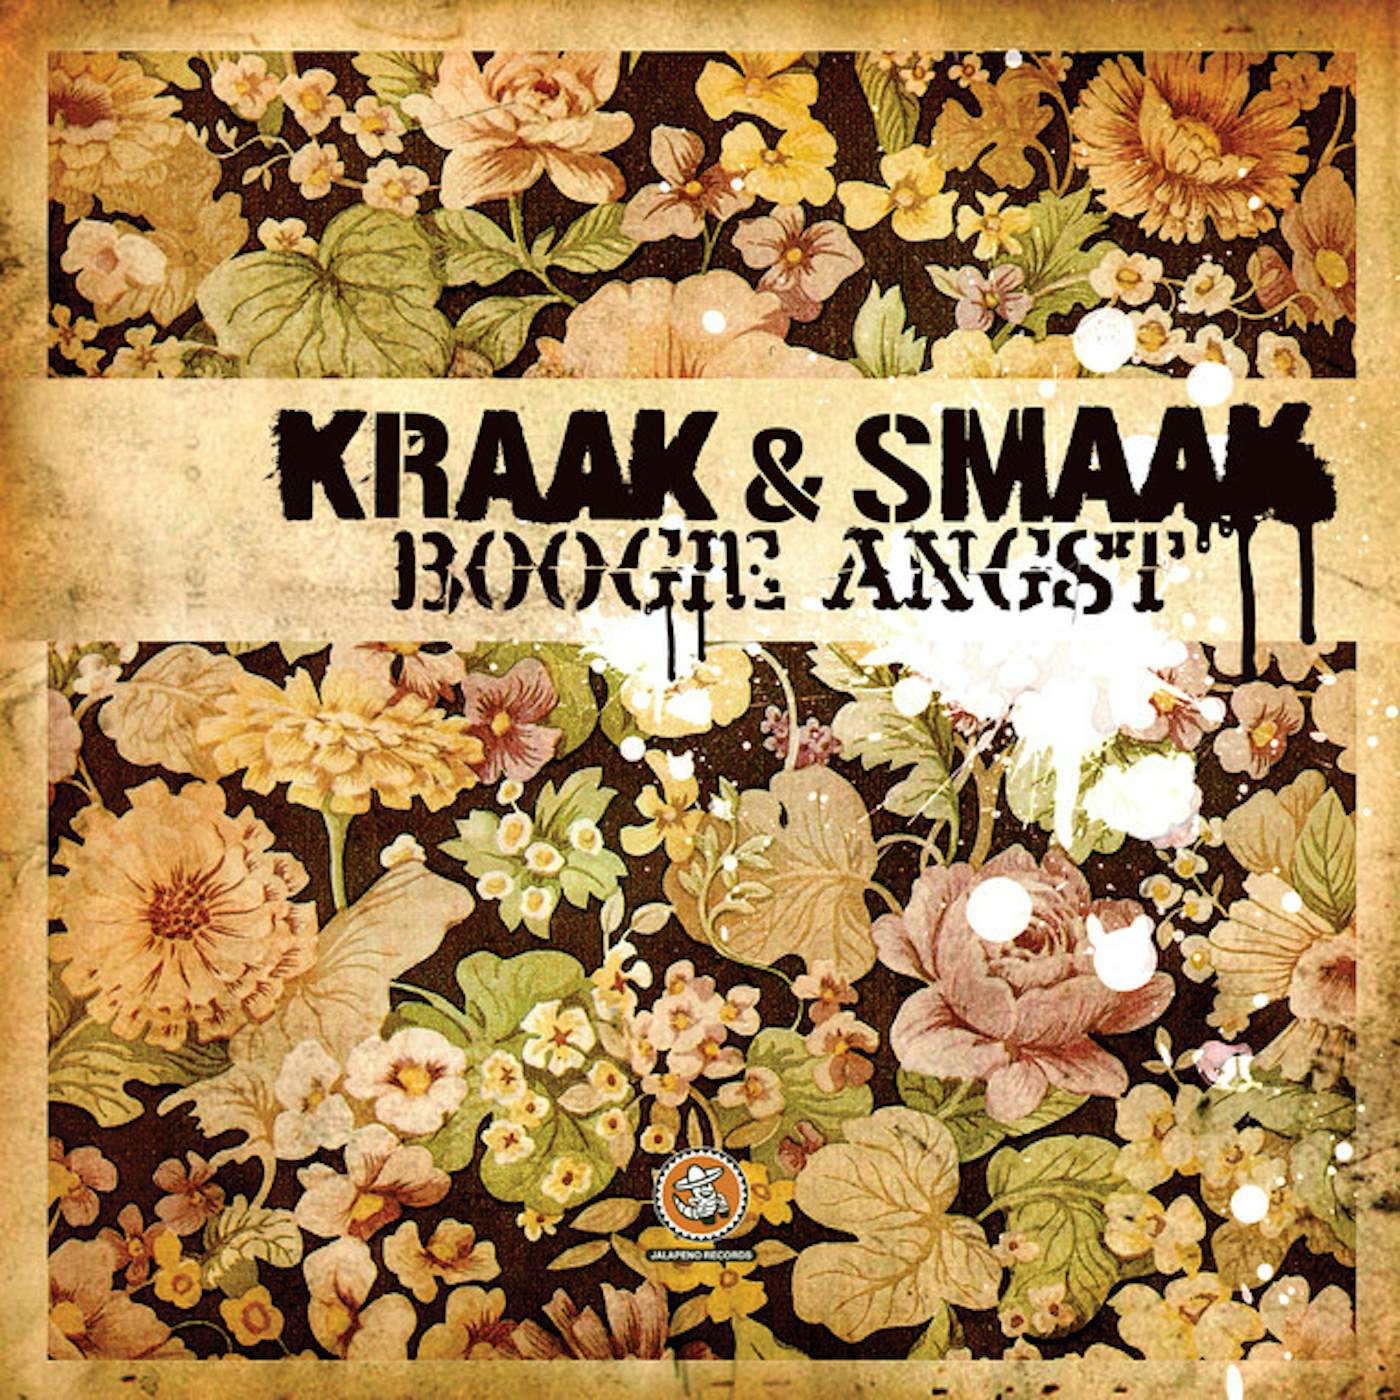 Kraak & Smaak Boogie Angst Vinyl Record